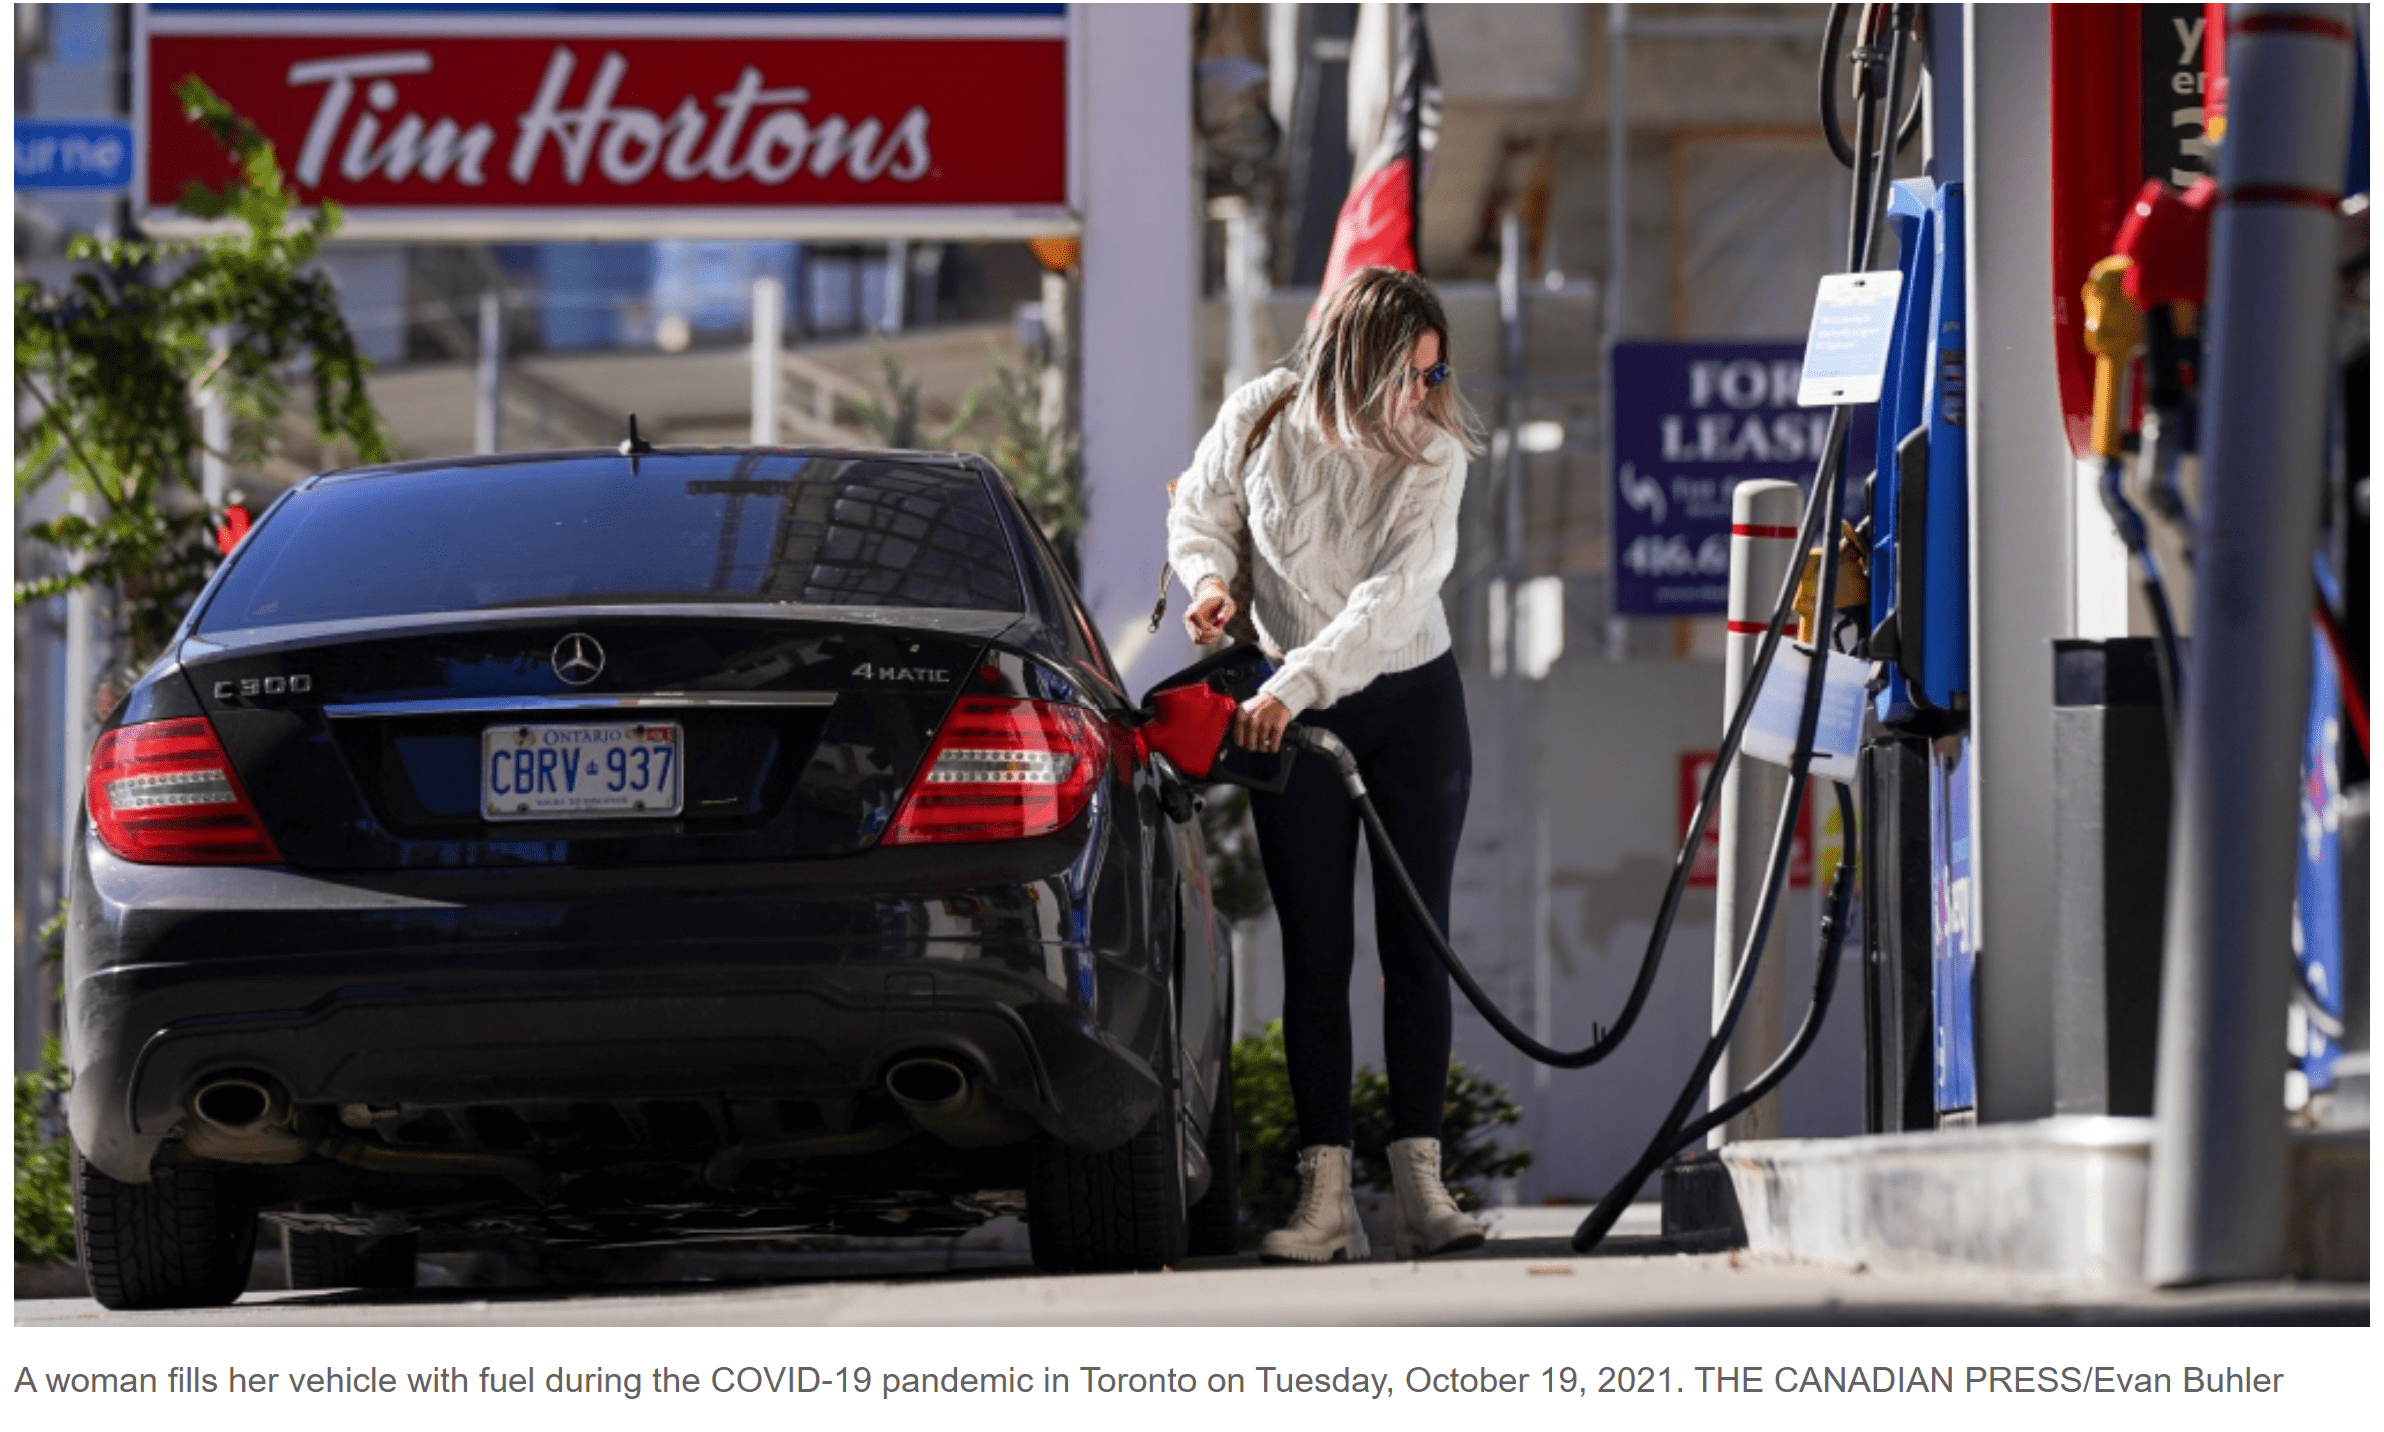 قیمت بنزین در جنوب انتاریو شاهد کاهش «بی سابقه ای» همراه با یک افت دیگر در آخر این هفته است